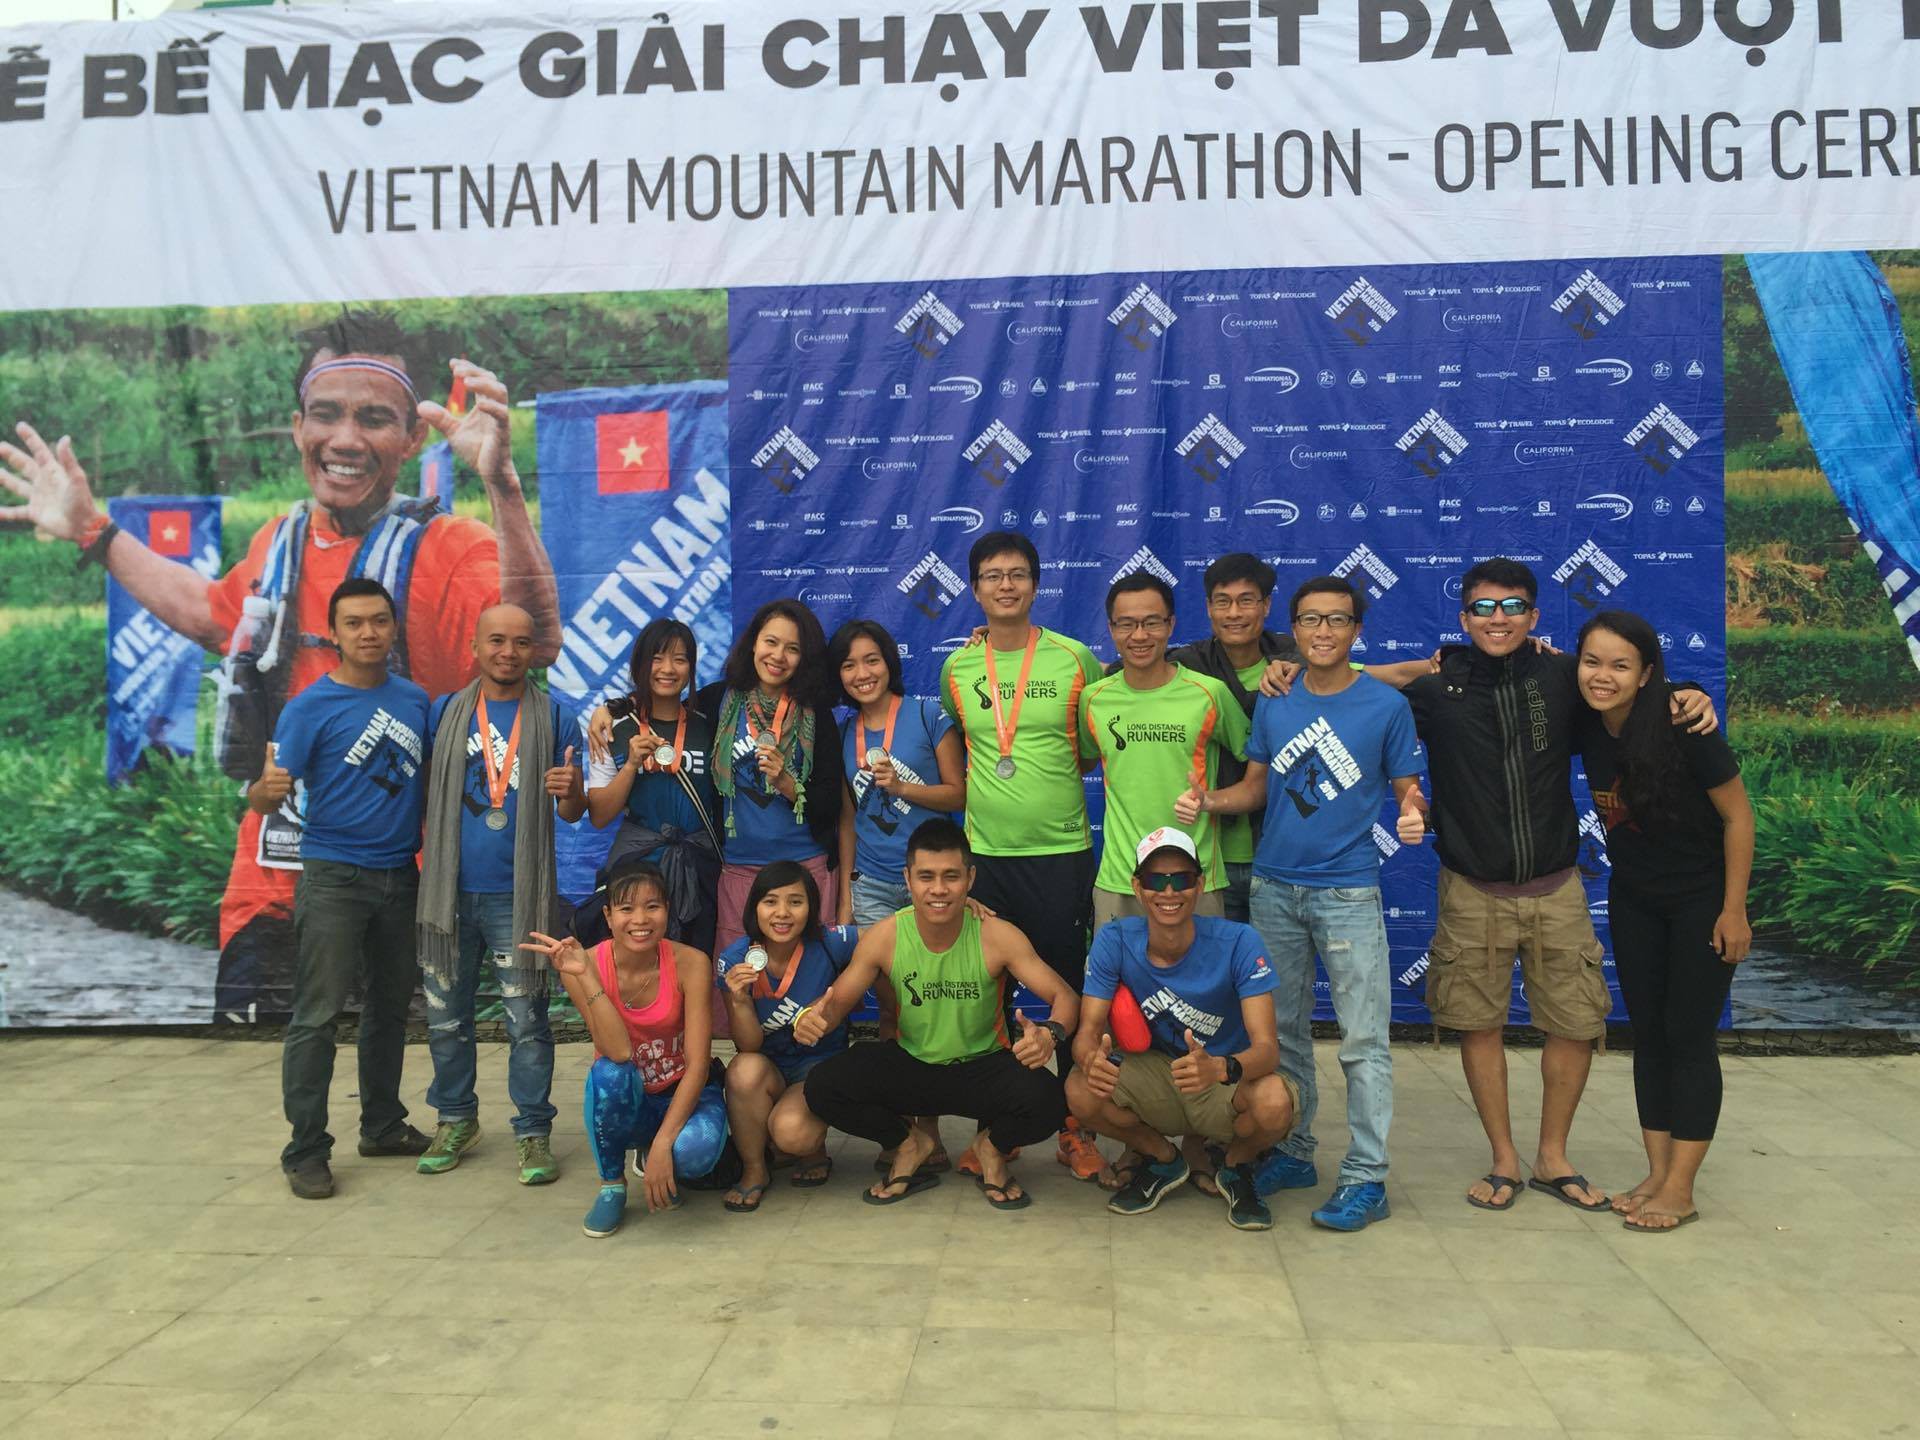 Giải VMM là cơ hội để những người yêu chạy bộ 3 miền gặp mặt giao lưu